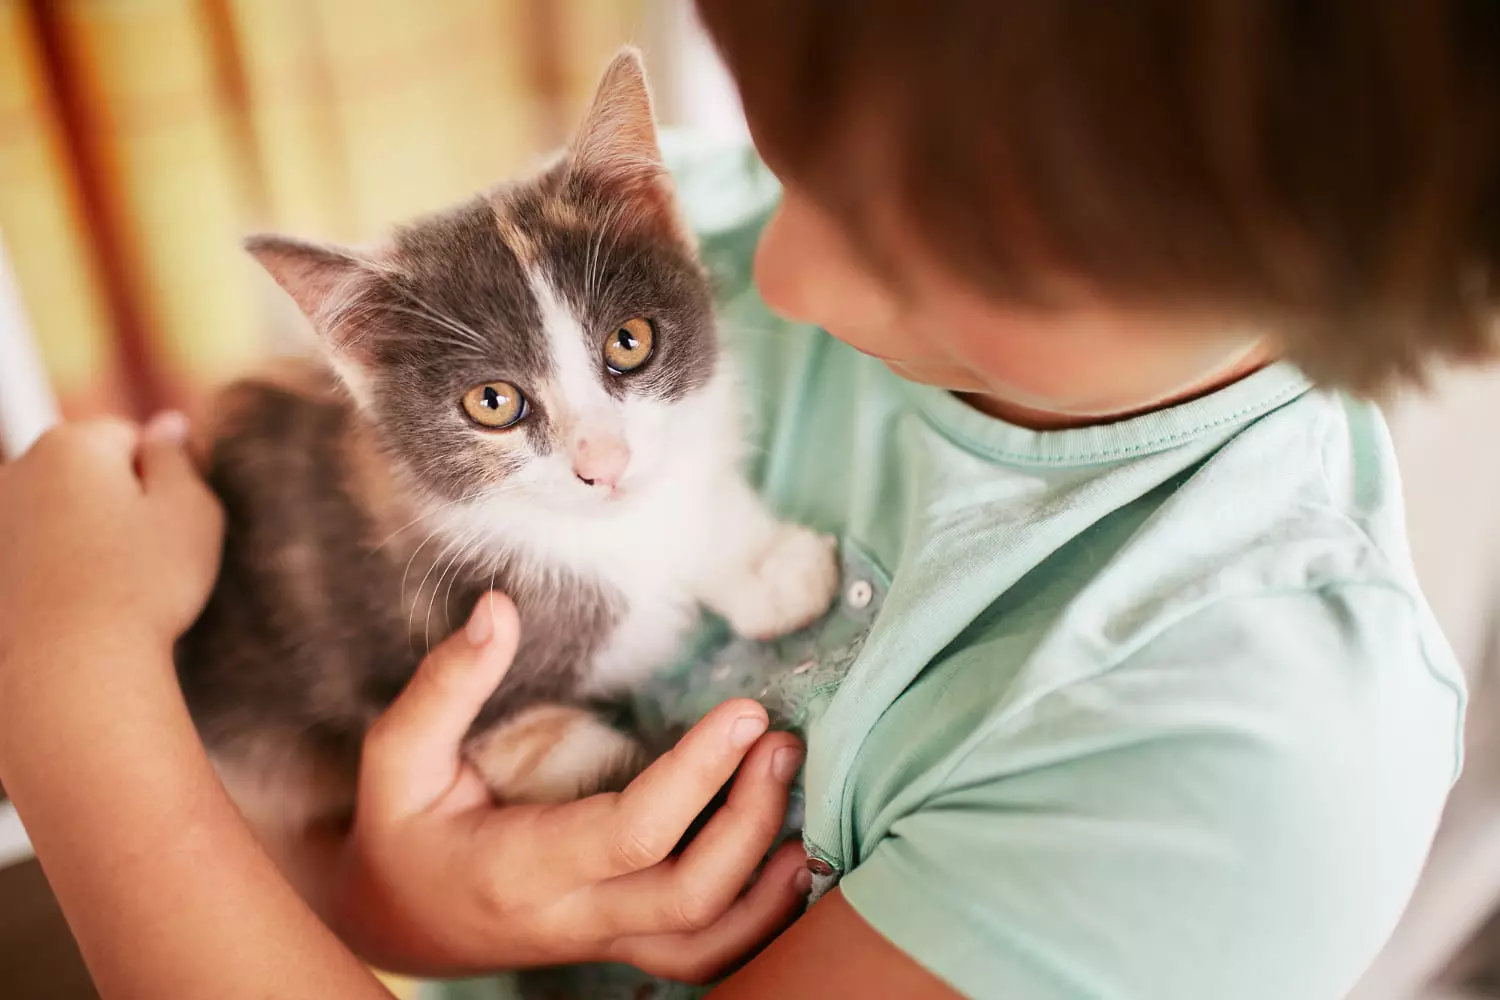 Guía completa con todo lo que necesitas saber para cuidar de tu primer gato. Aprenderás todo lo necesario para que seas feliz con tu mascota.